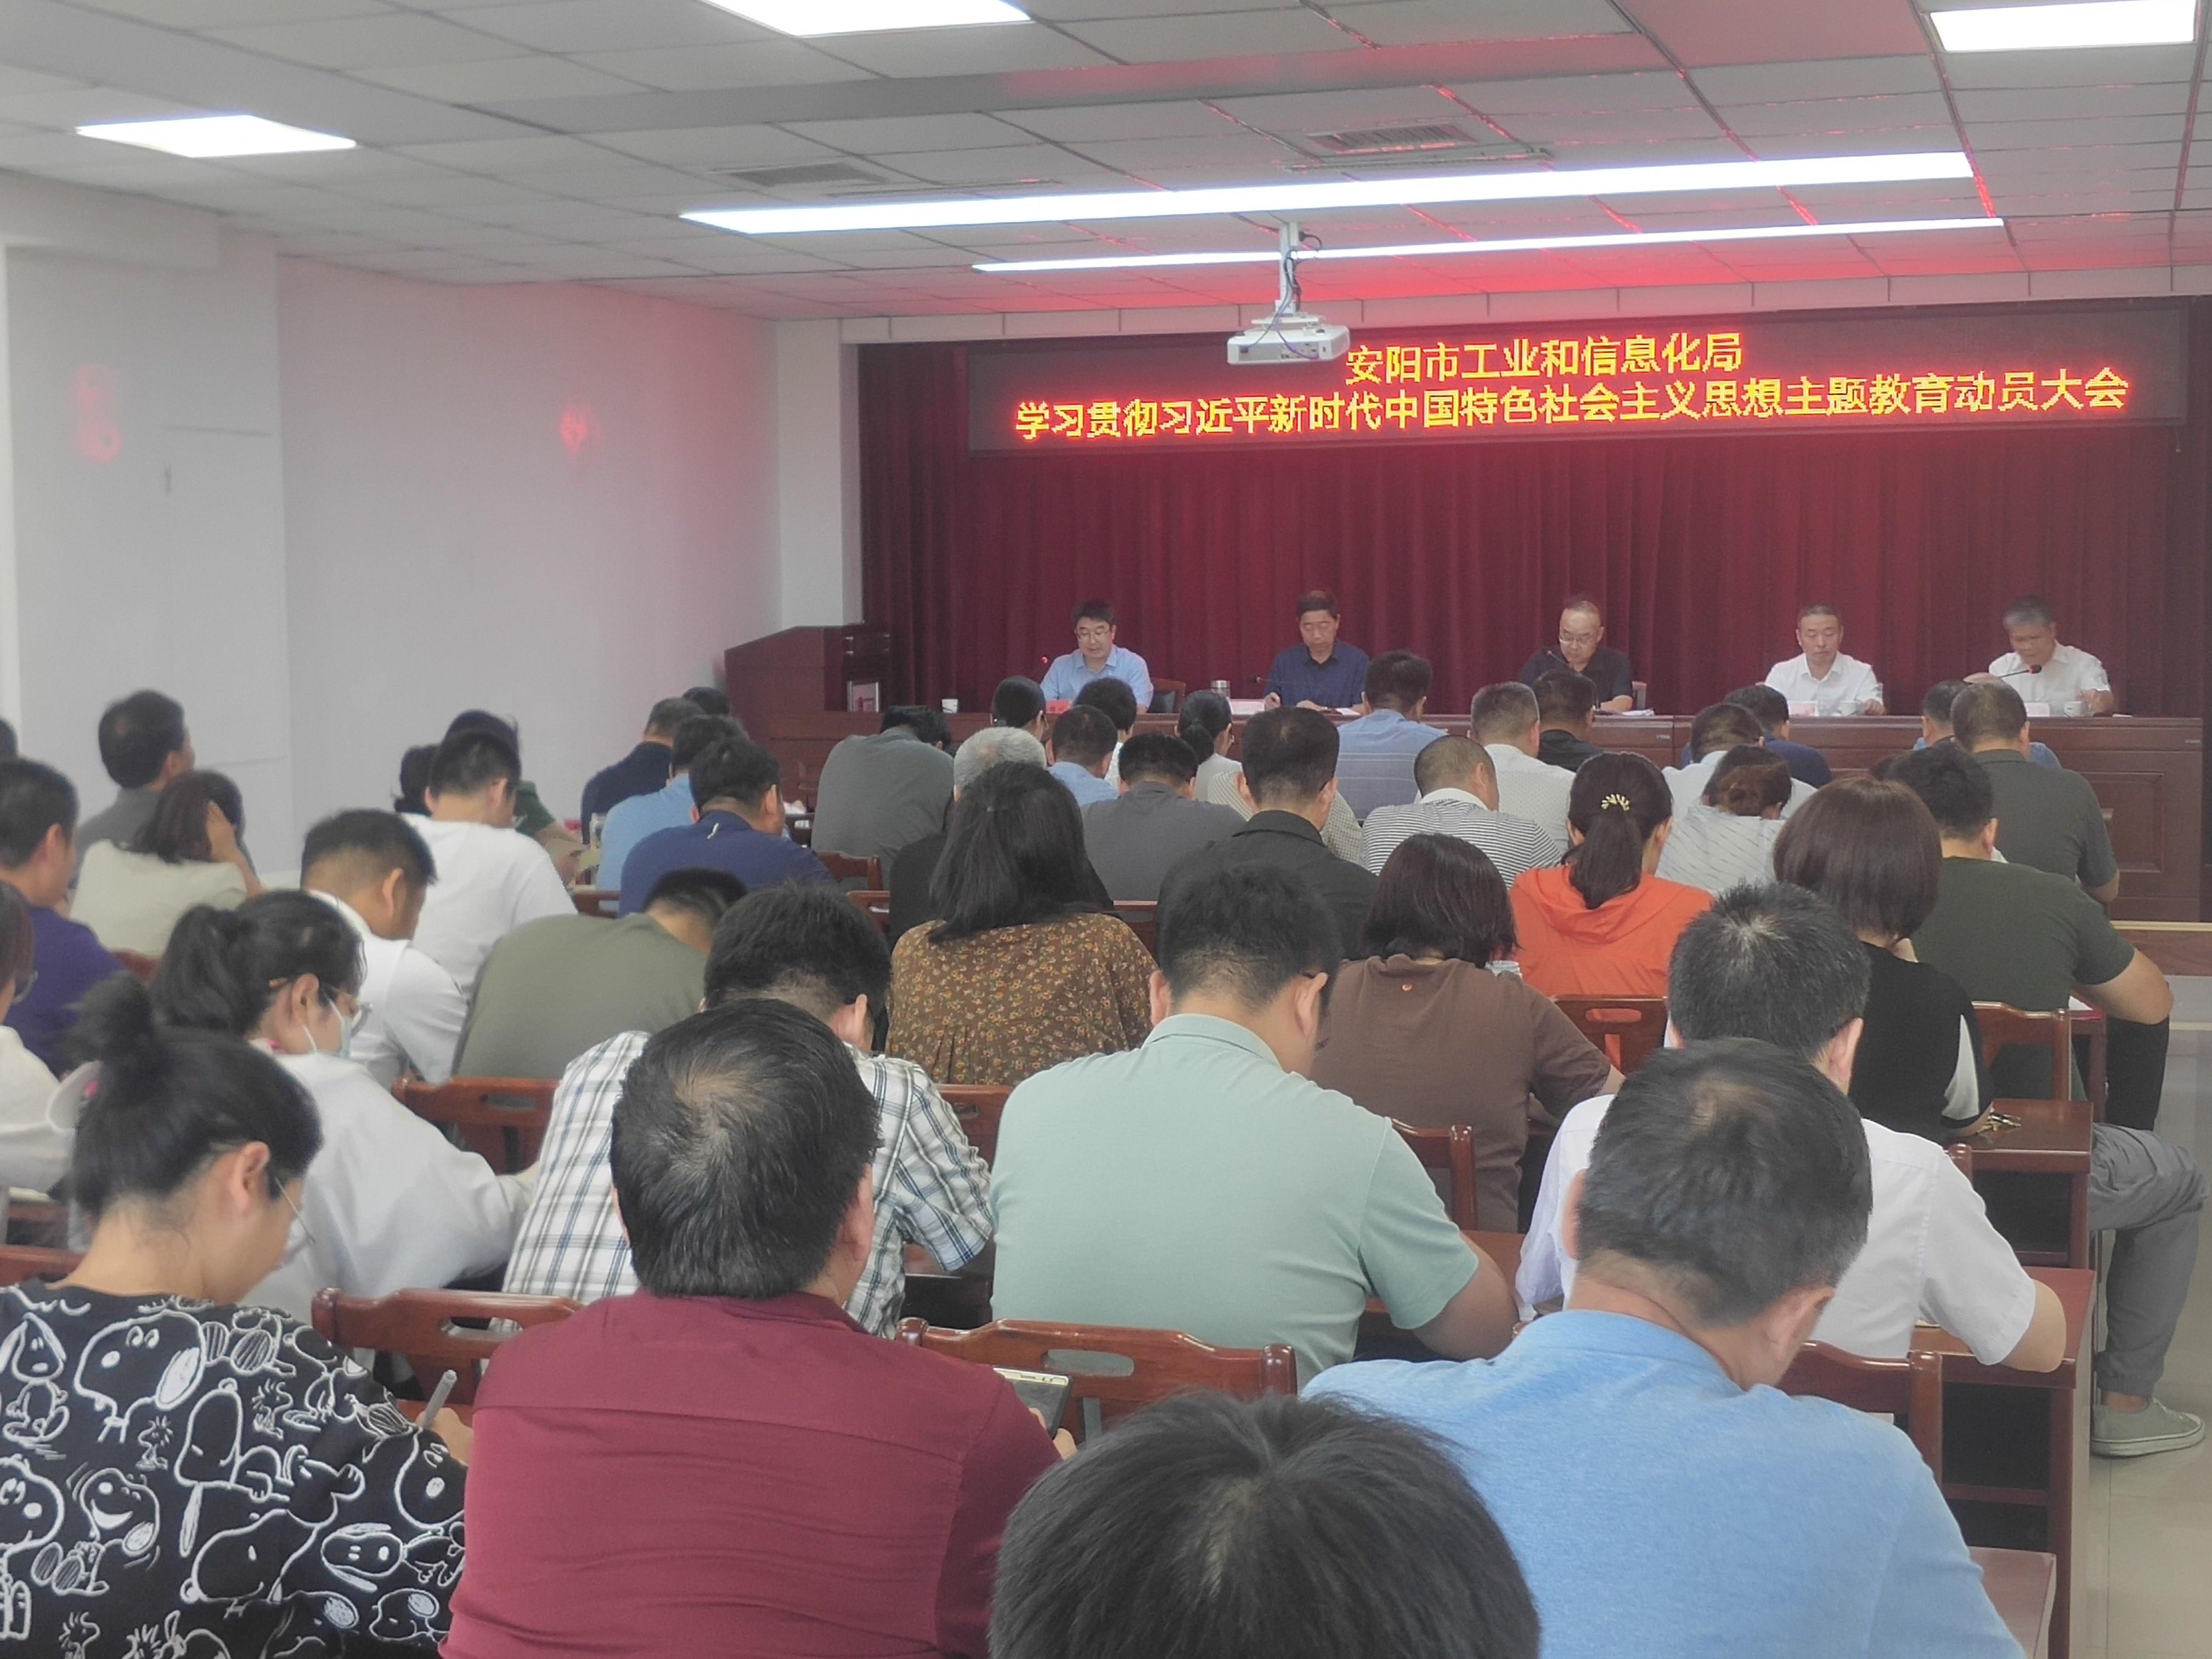 安阳市工业和信息化局召开学习贯彻习近平新时代中国特色社会主义思想主题教育动员大会